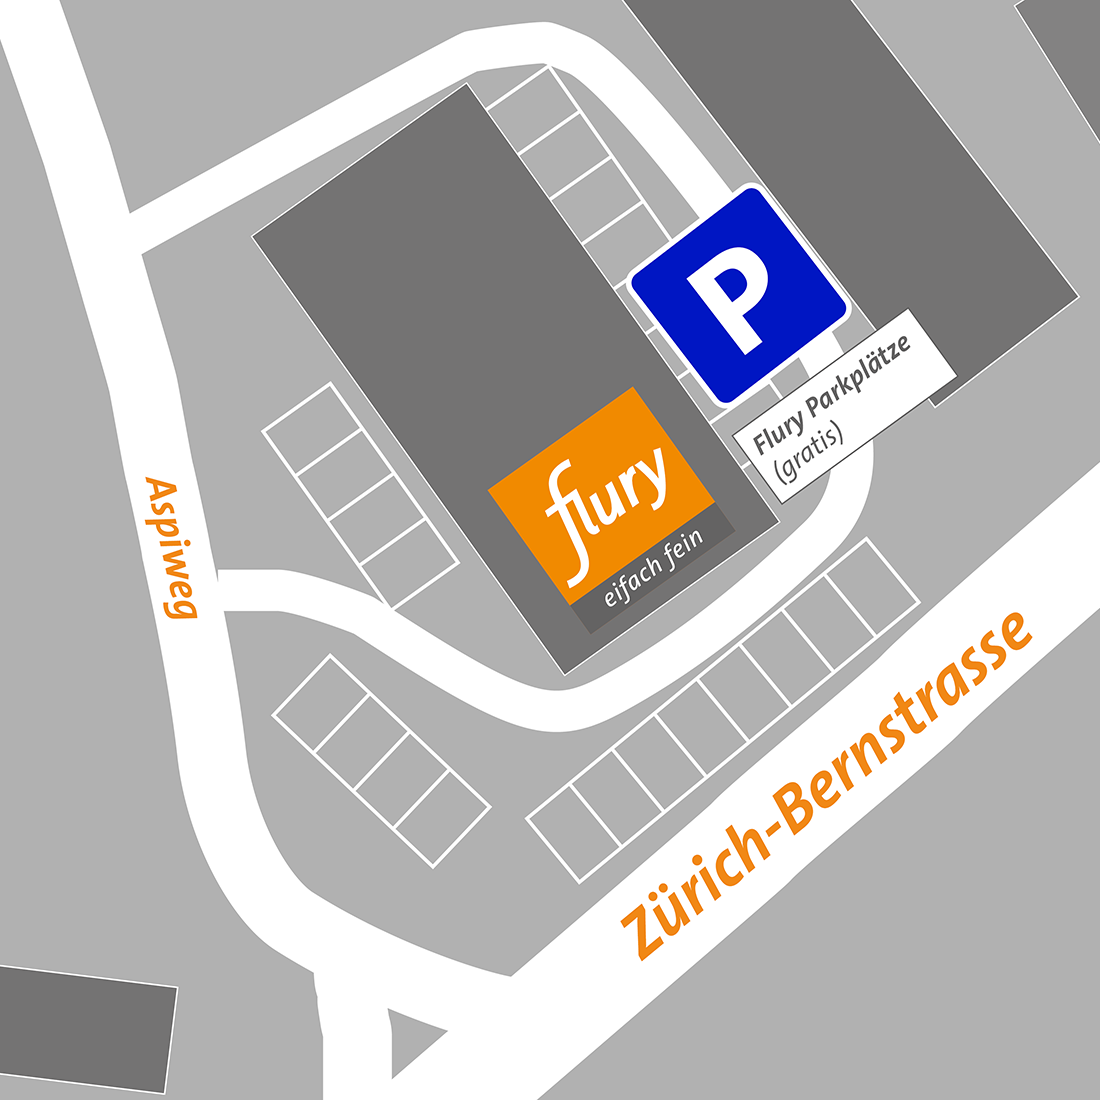 Grafische Darstellung der Parkmöglichkeiten am Standort Koppigen Aspi.